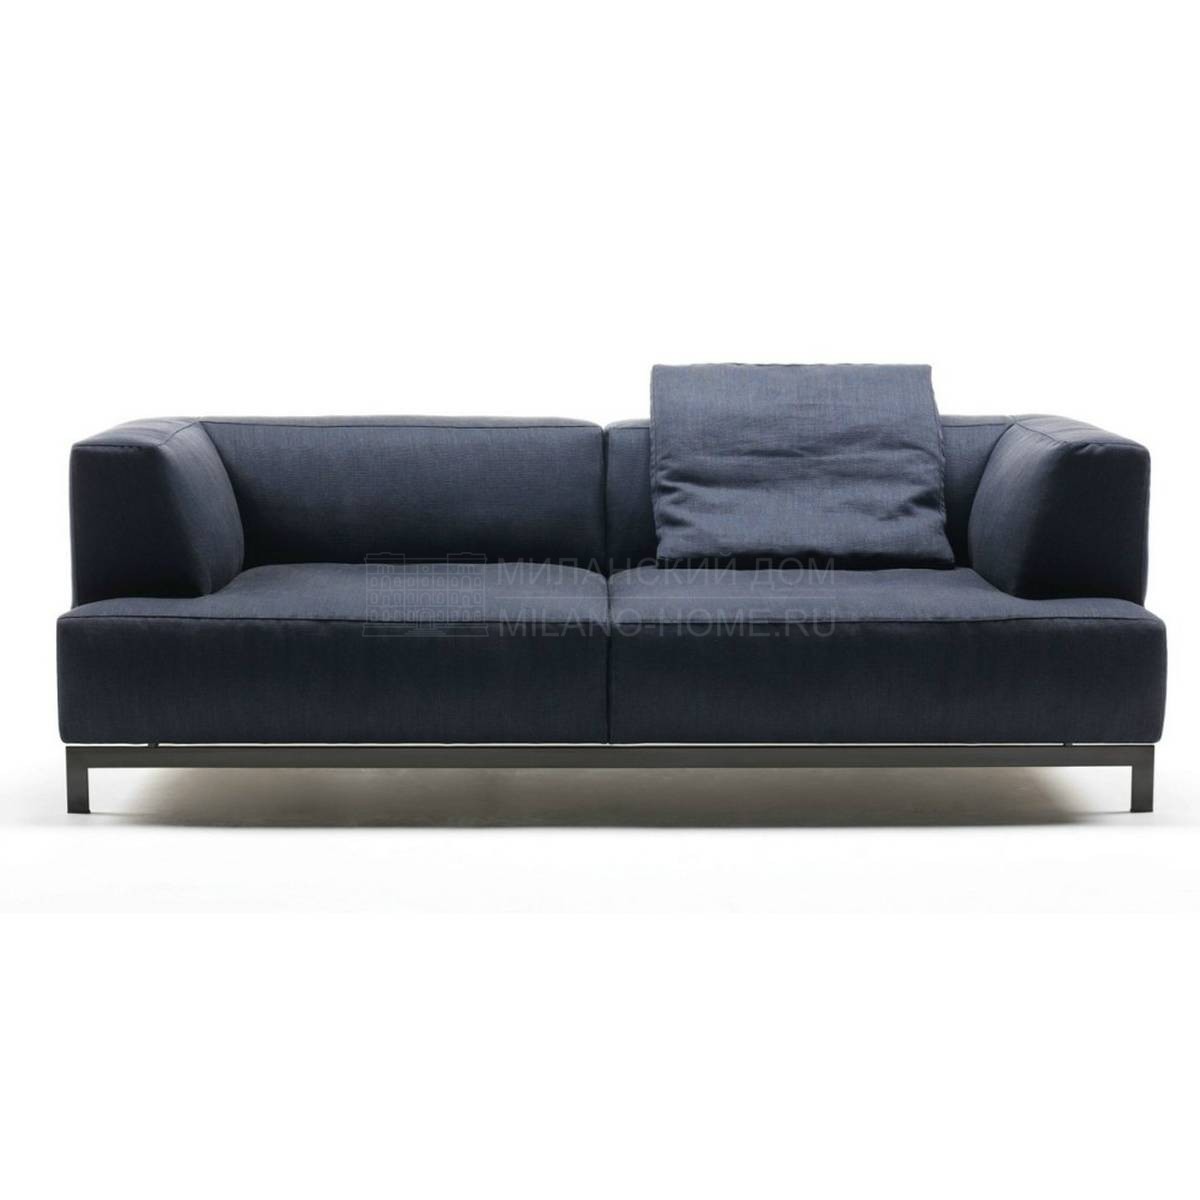 Прямой диван Metrocubo sofa из Италии фабрики LIVING DIVANI